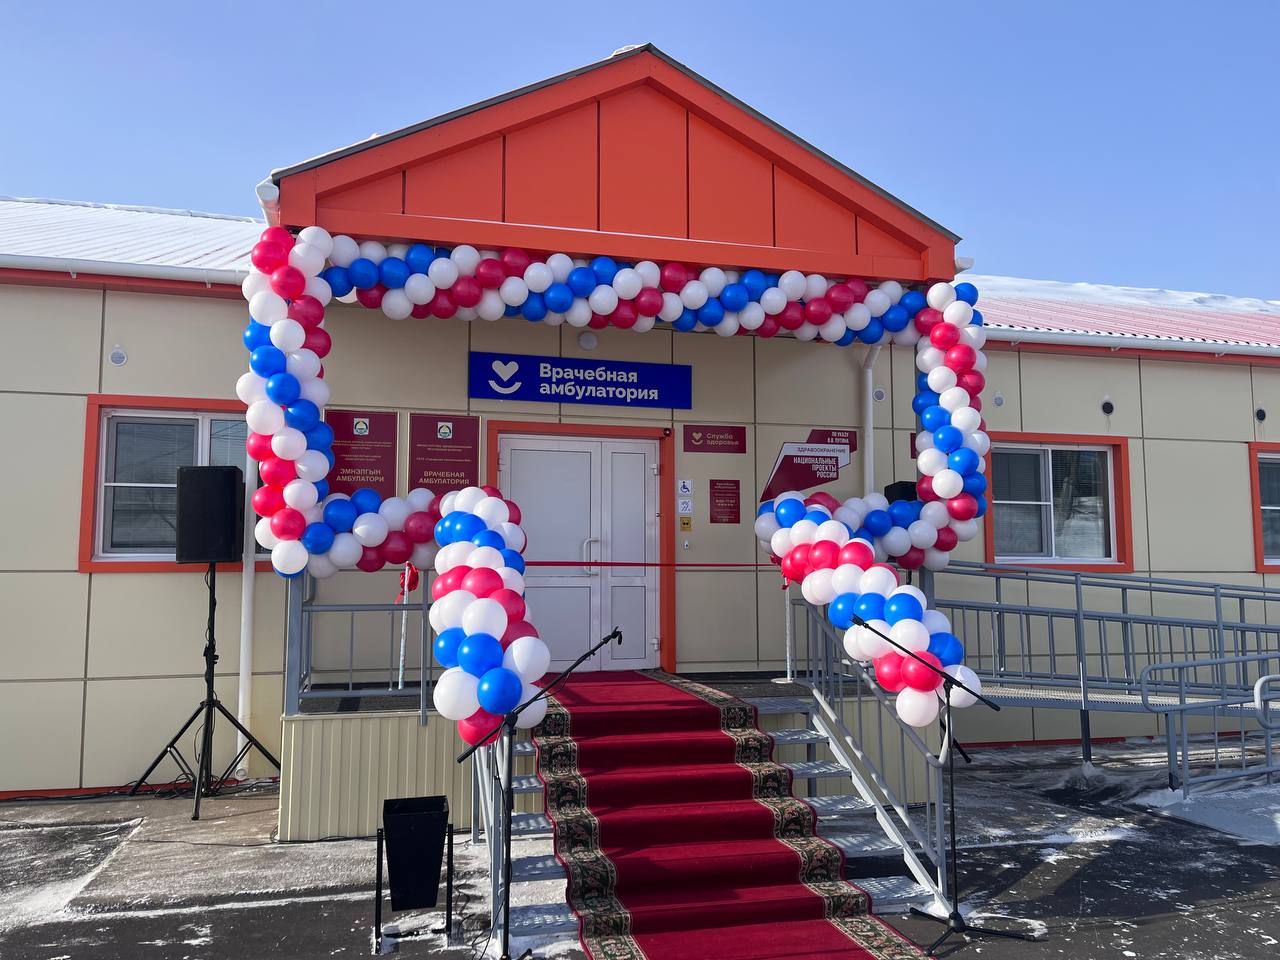 Фото В микрорайоне Зеленхоз в Улан-Удэ открылась новая врачебная амбулатория